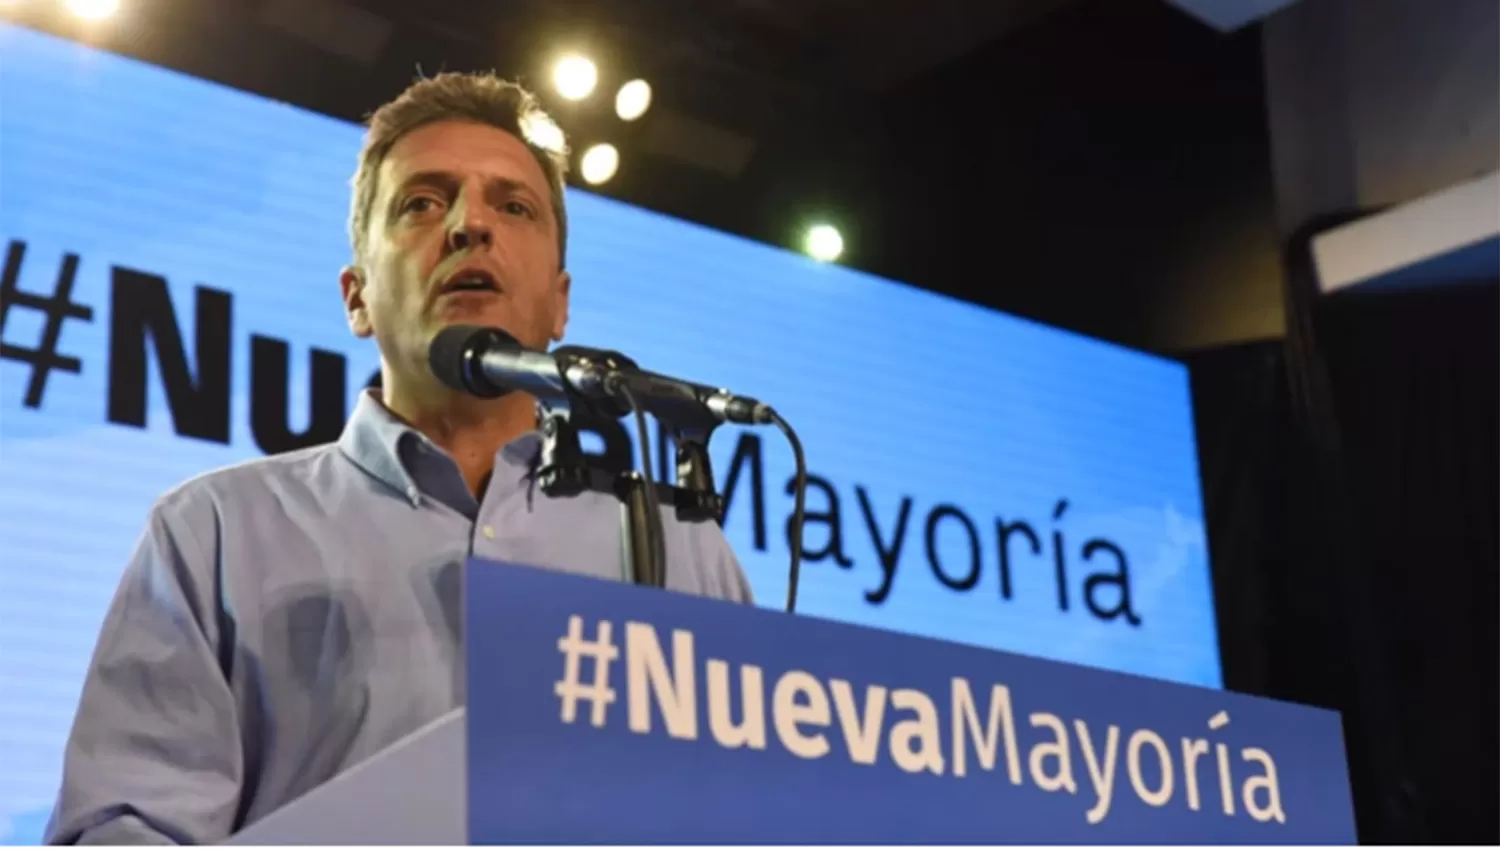 El Frente Renovador encomendó a Massa negociar una coalición opositora para enfrentar a Macri